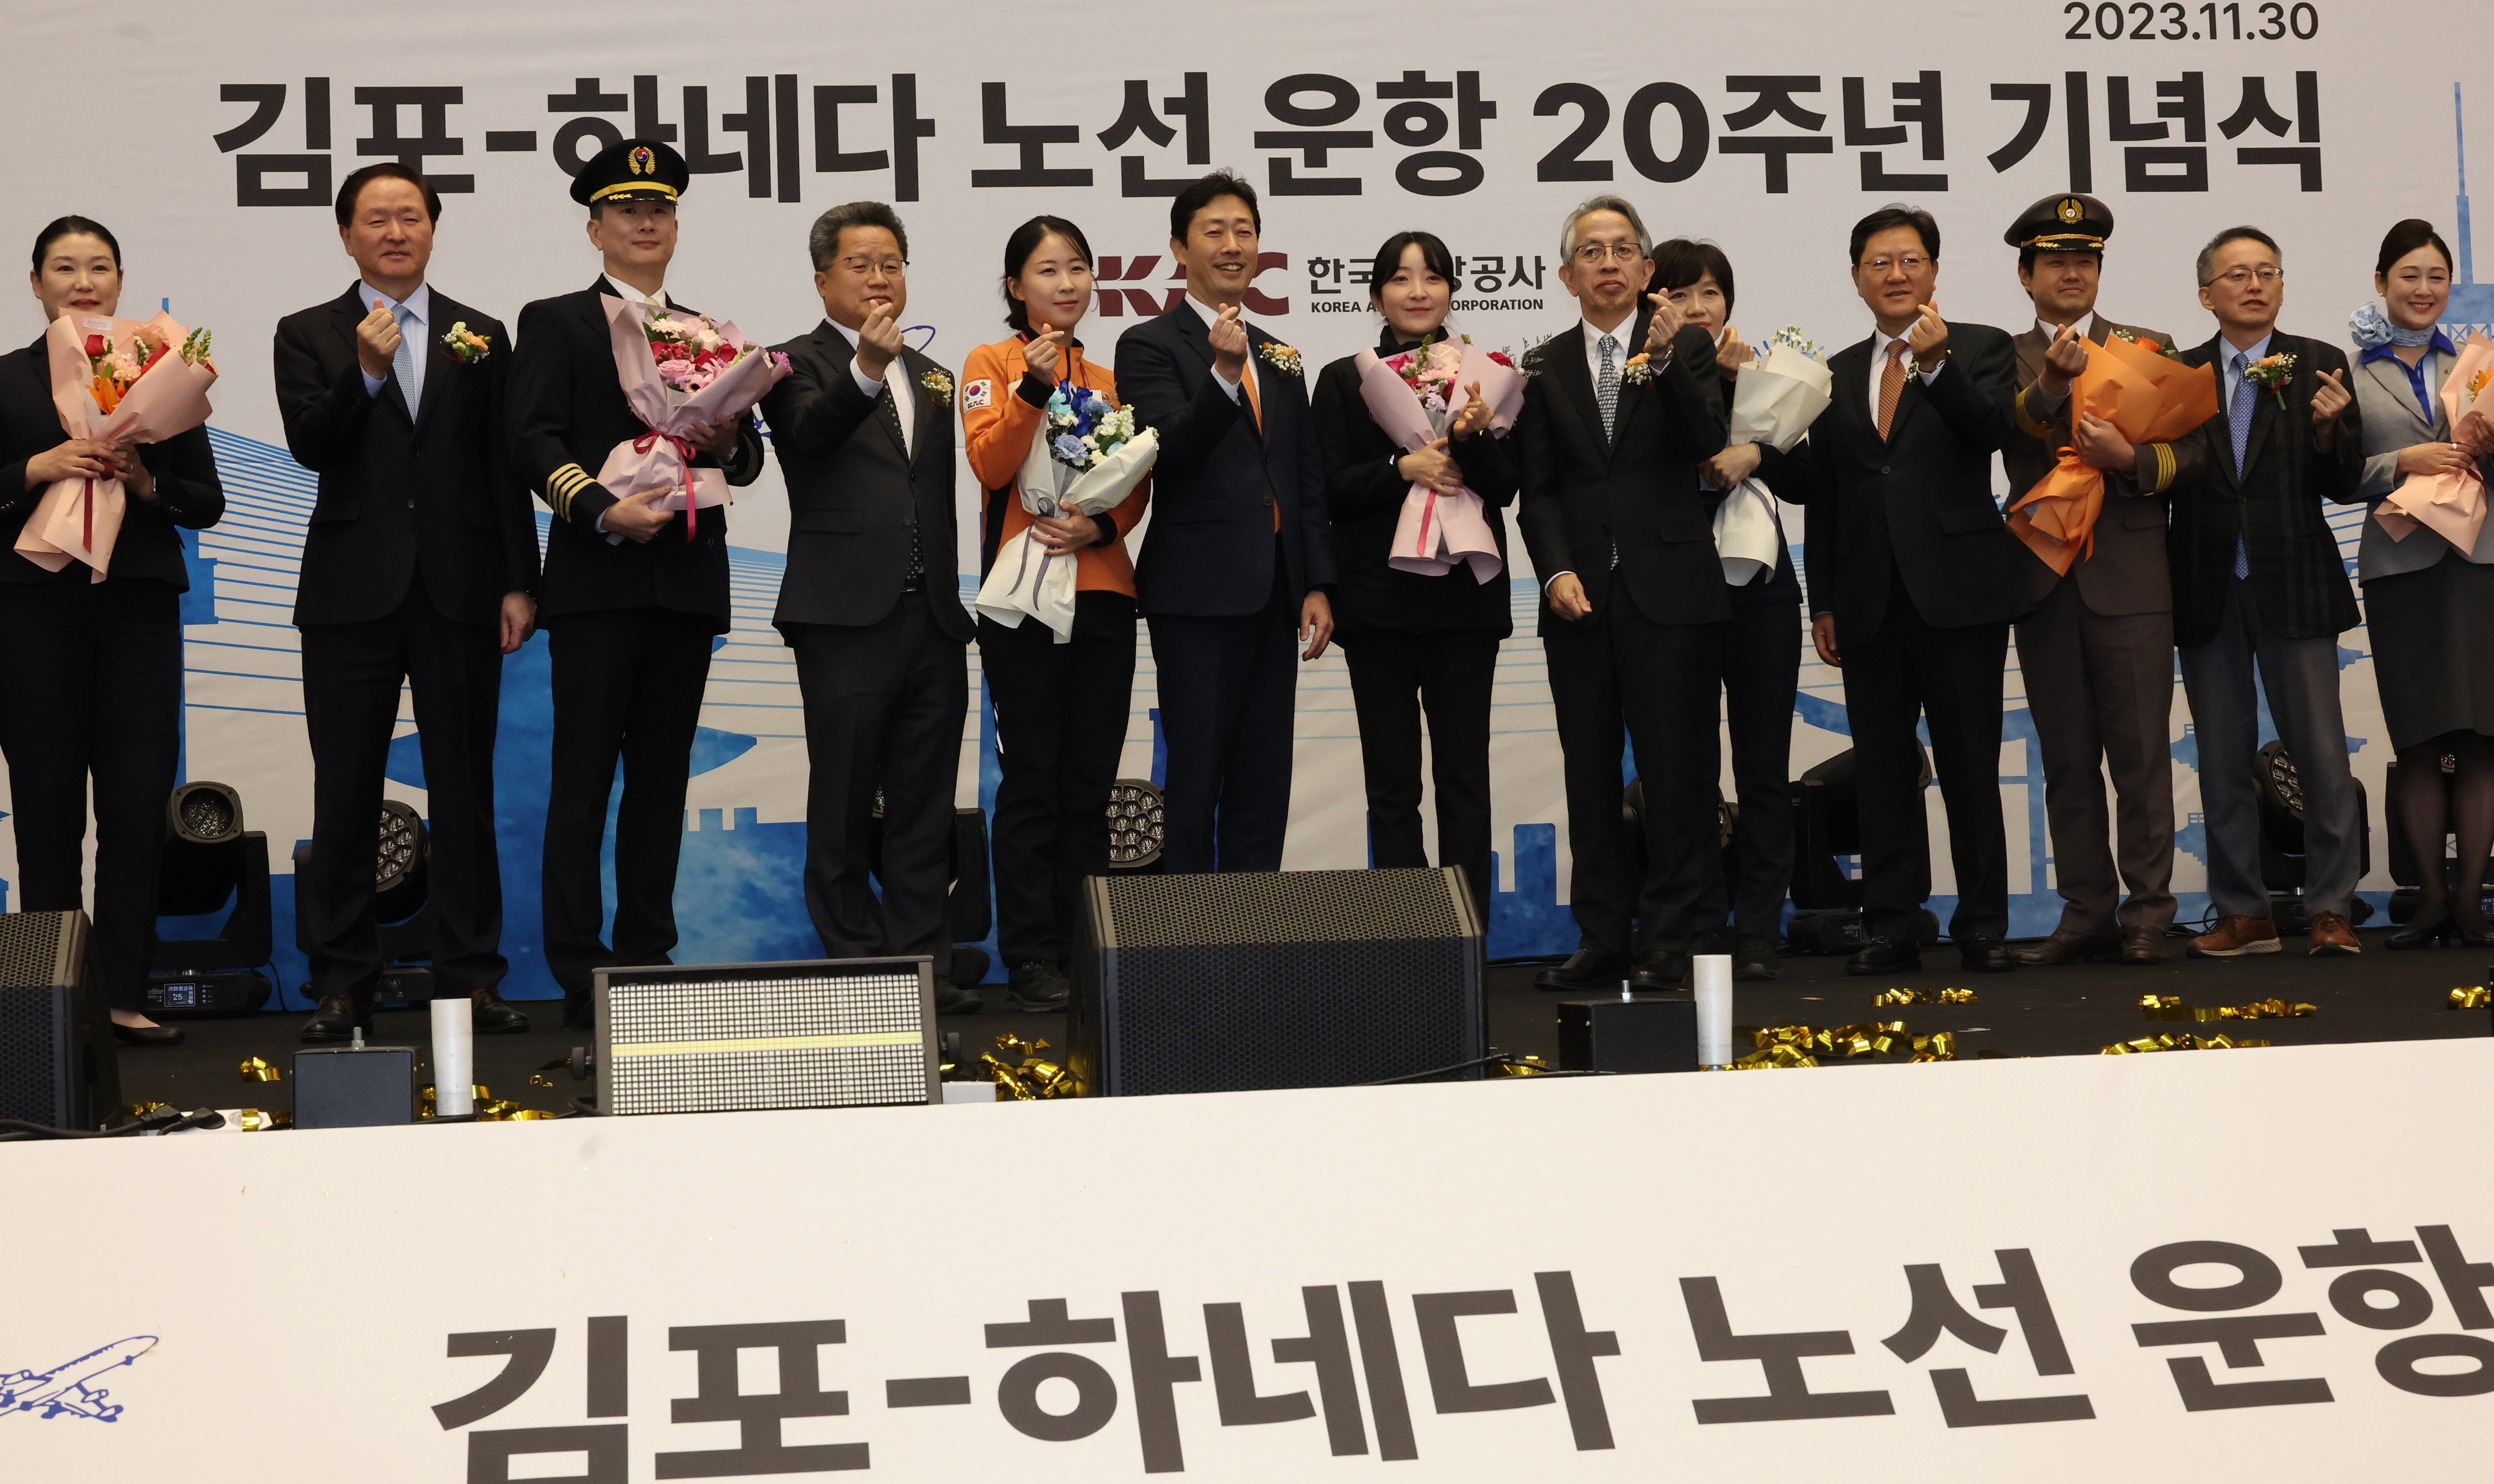 김포-하네다 노선 20주년 기념식